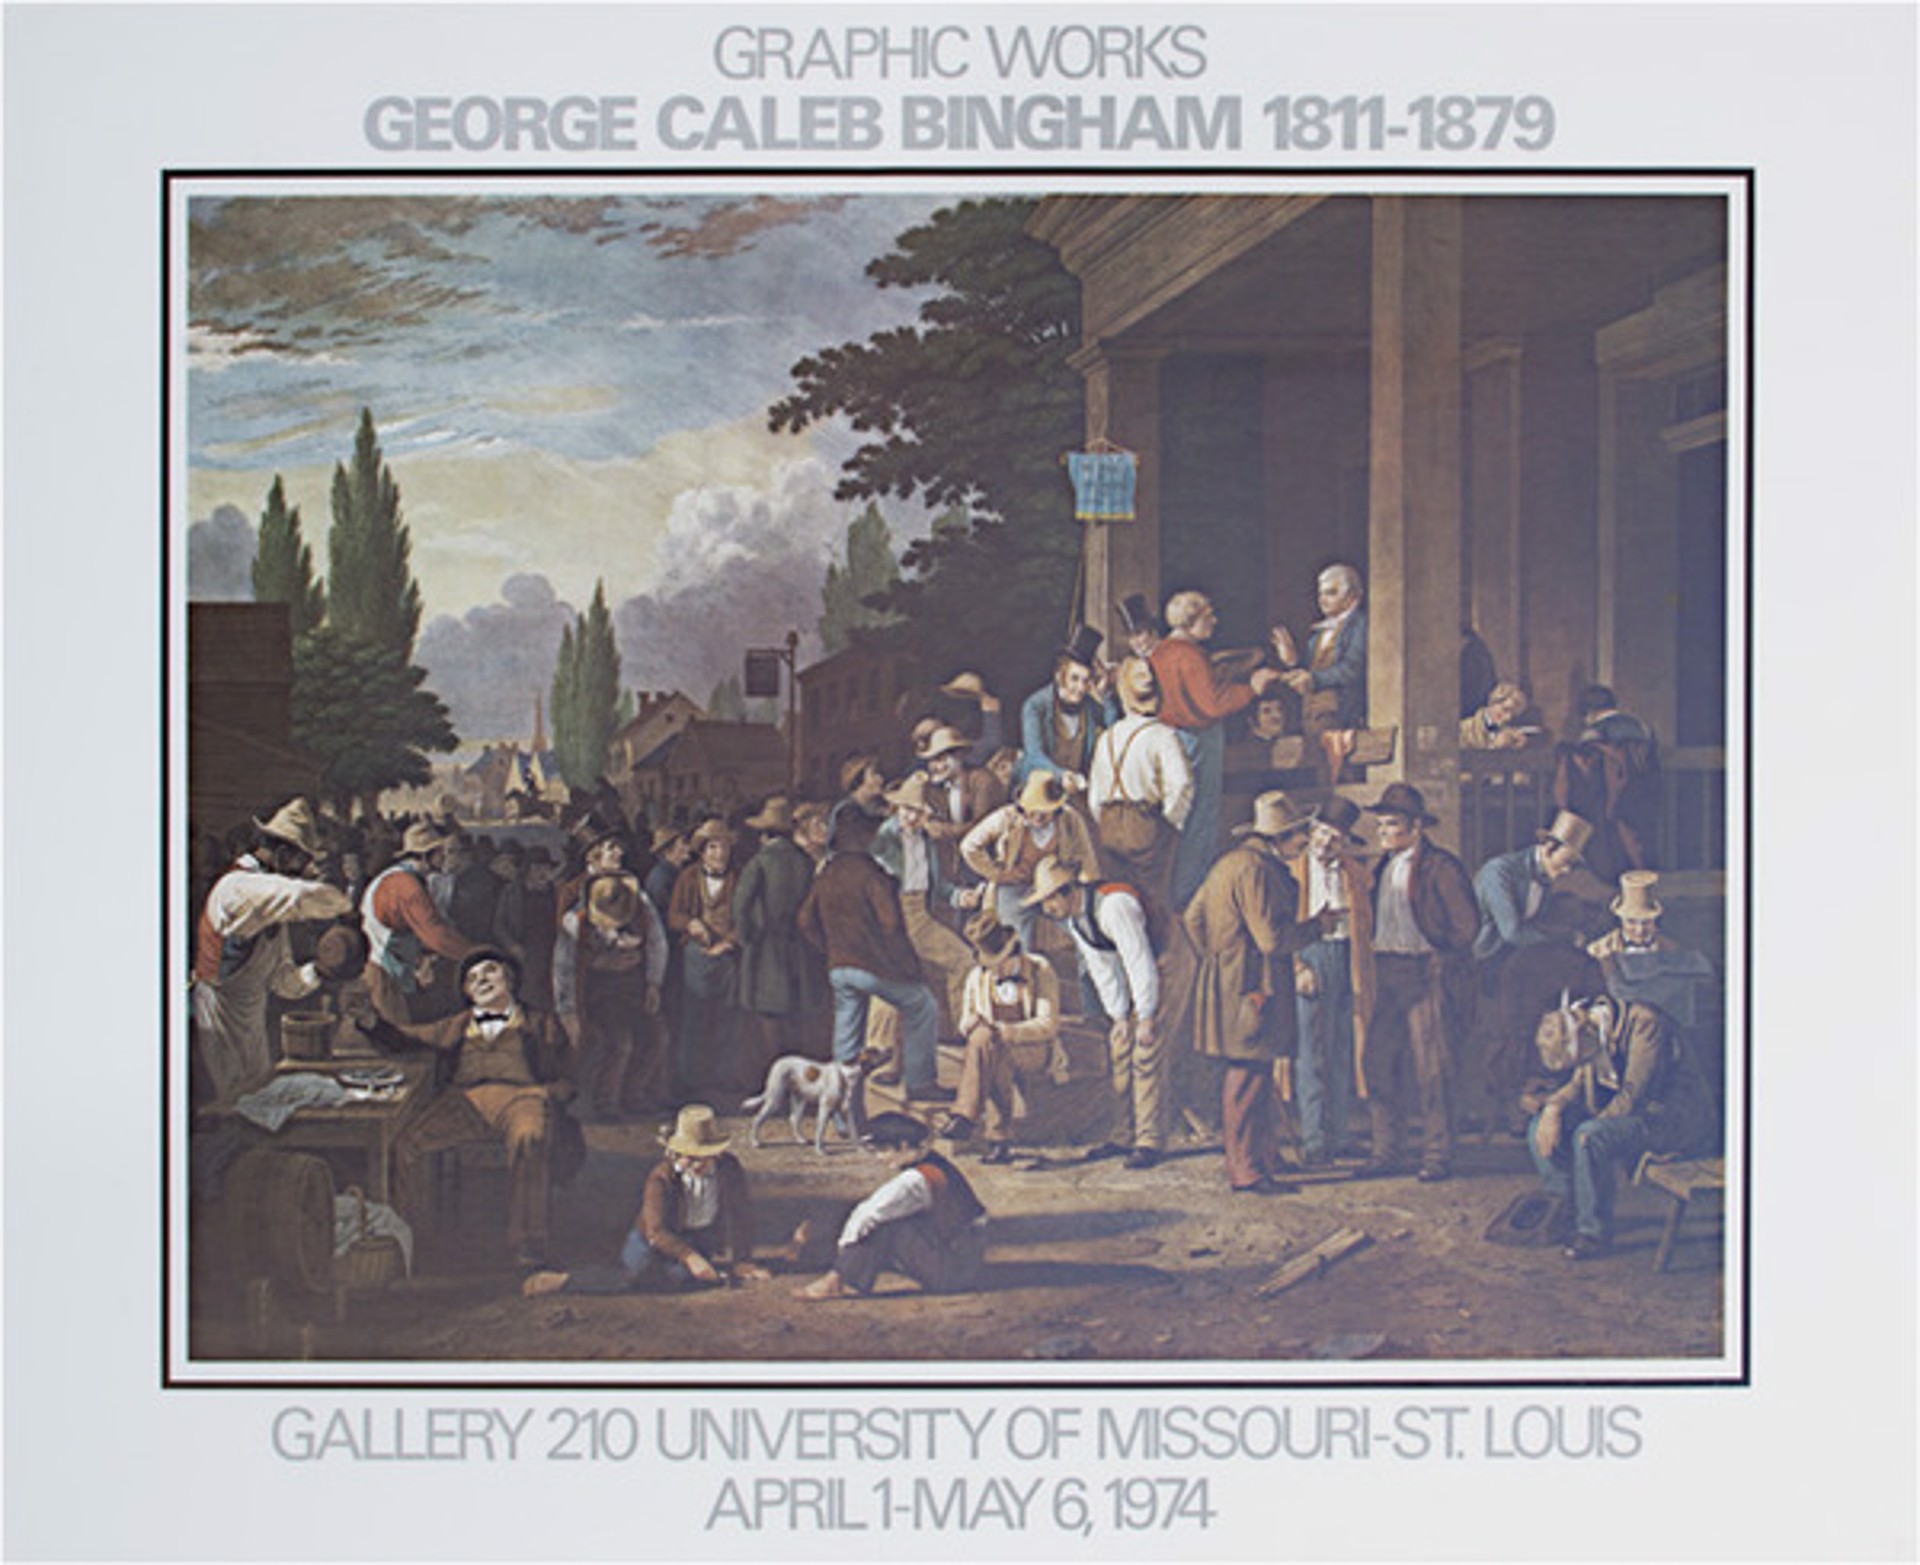 Graphic Works of George Caleb Bingham 1811-1879 Poster by George Caleb Bingham